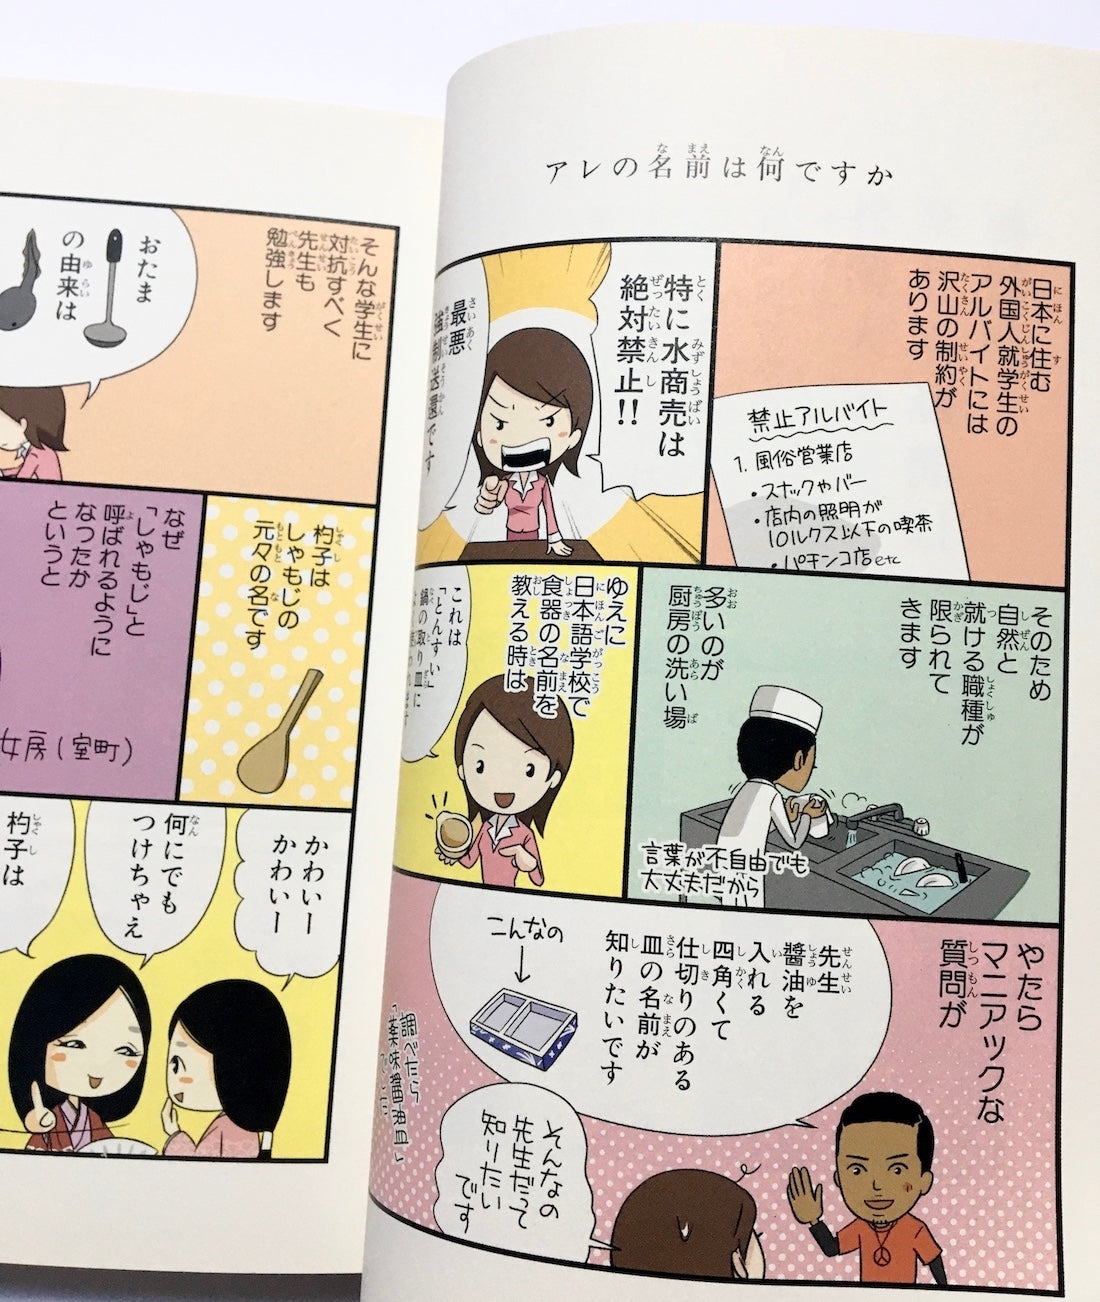 日本人の知らない日本語　なるほど~×爆笑!の日本語“再発見”コミックエッセイ